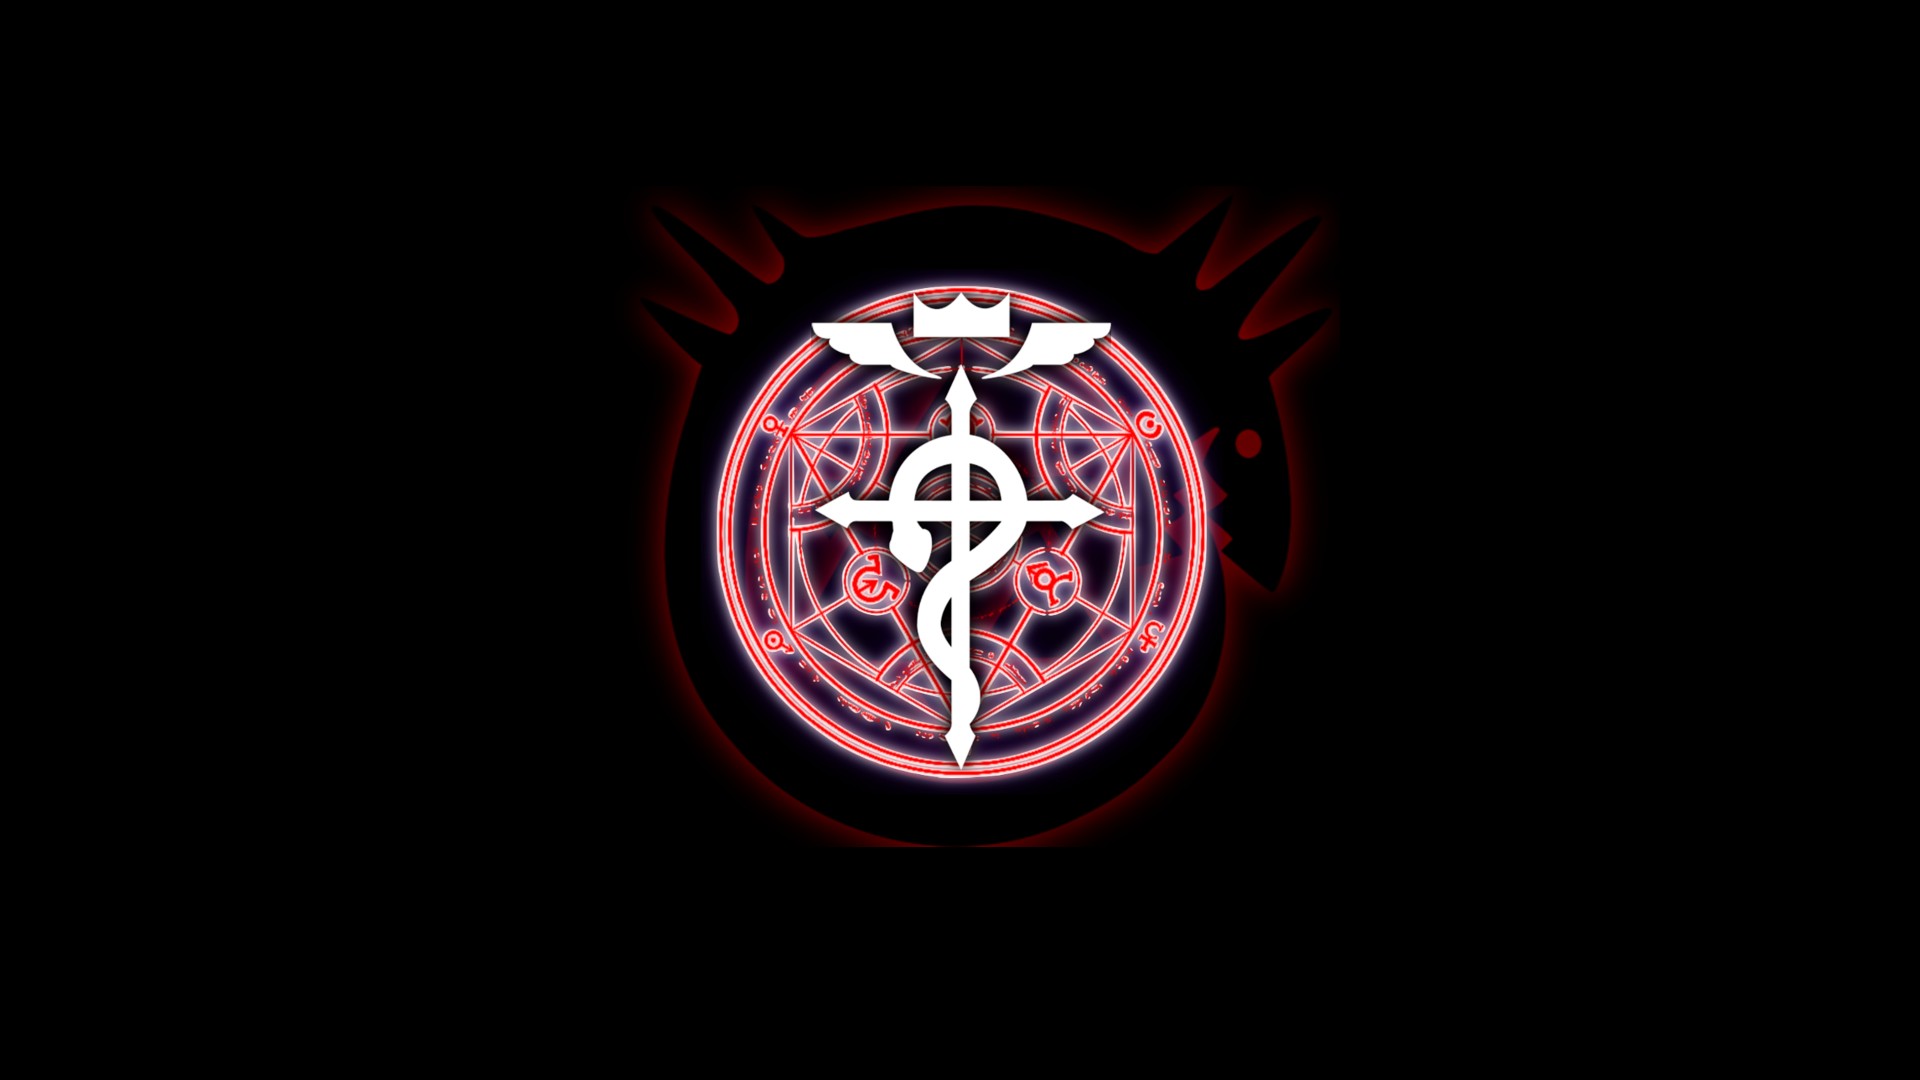 Full Metal Alchemist, Fullmetal Alchemist: Brotherhood, Neon Wallpaper